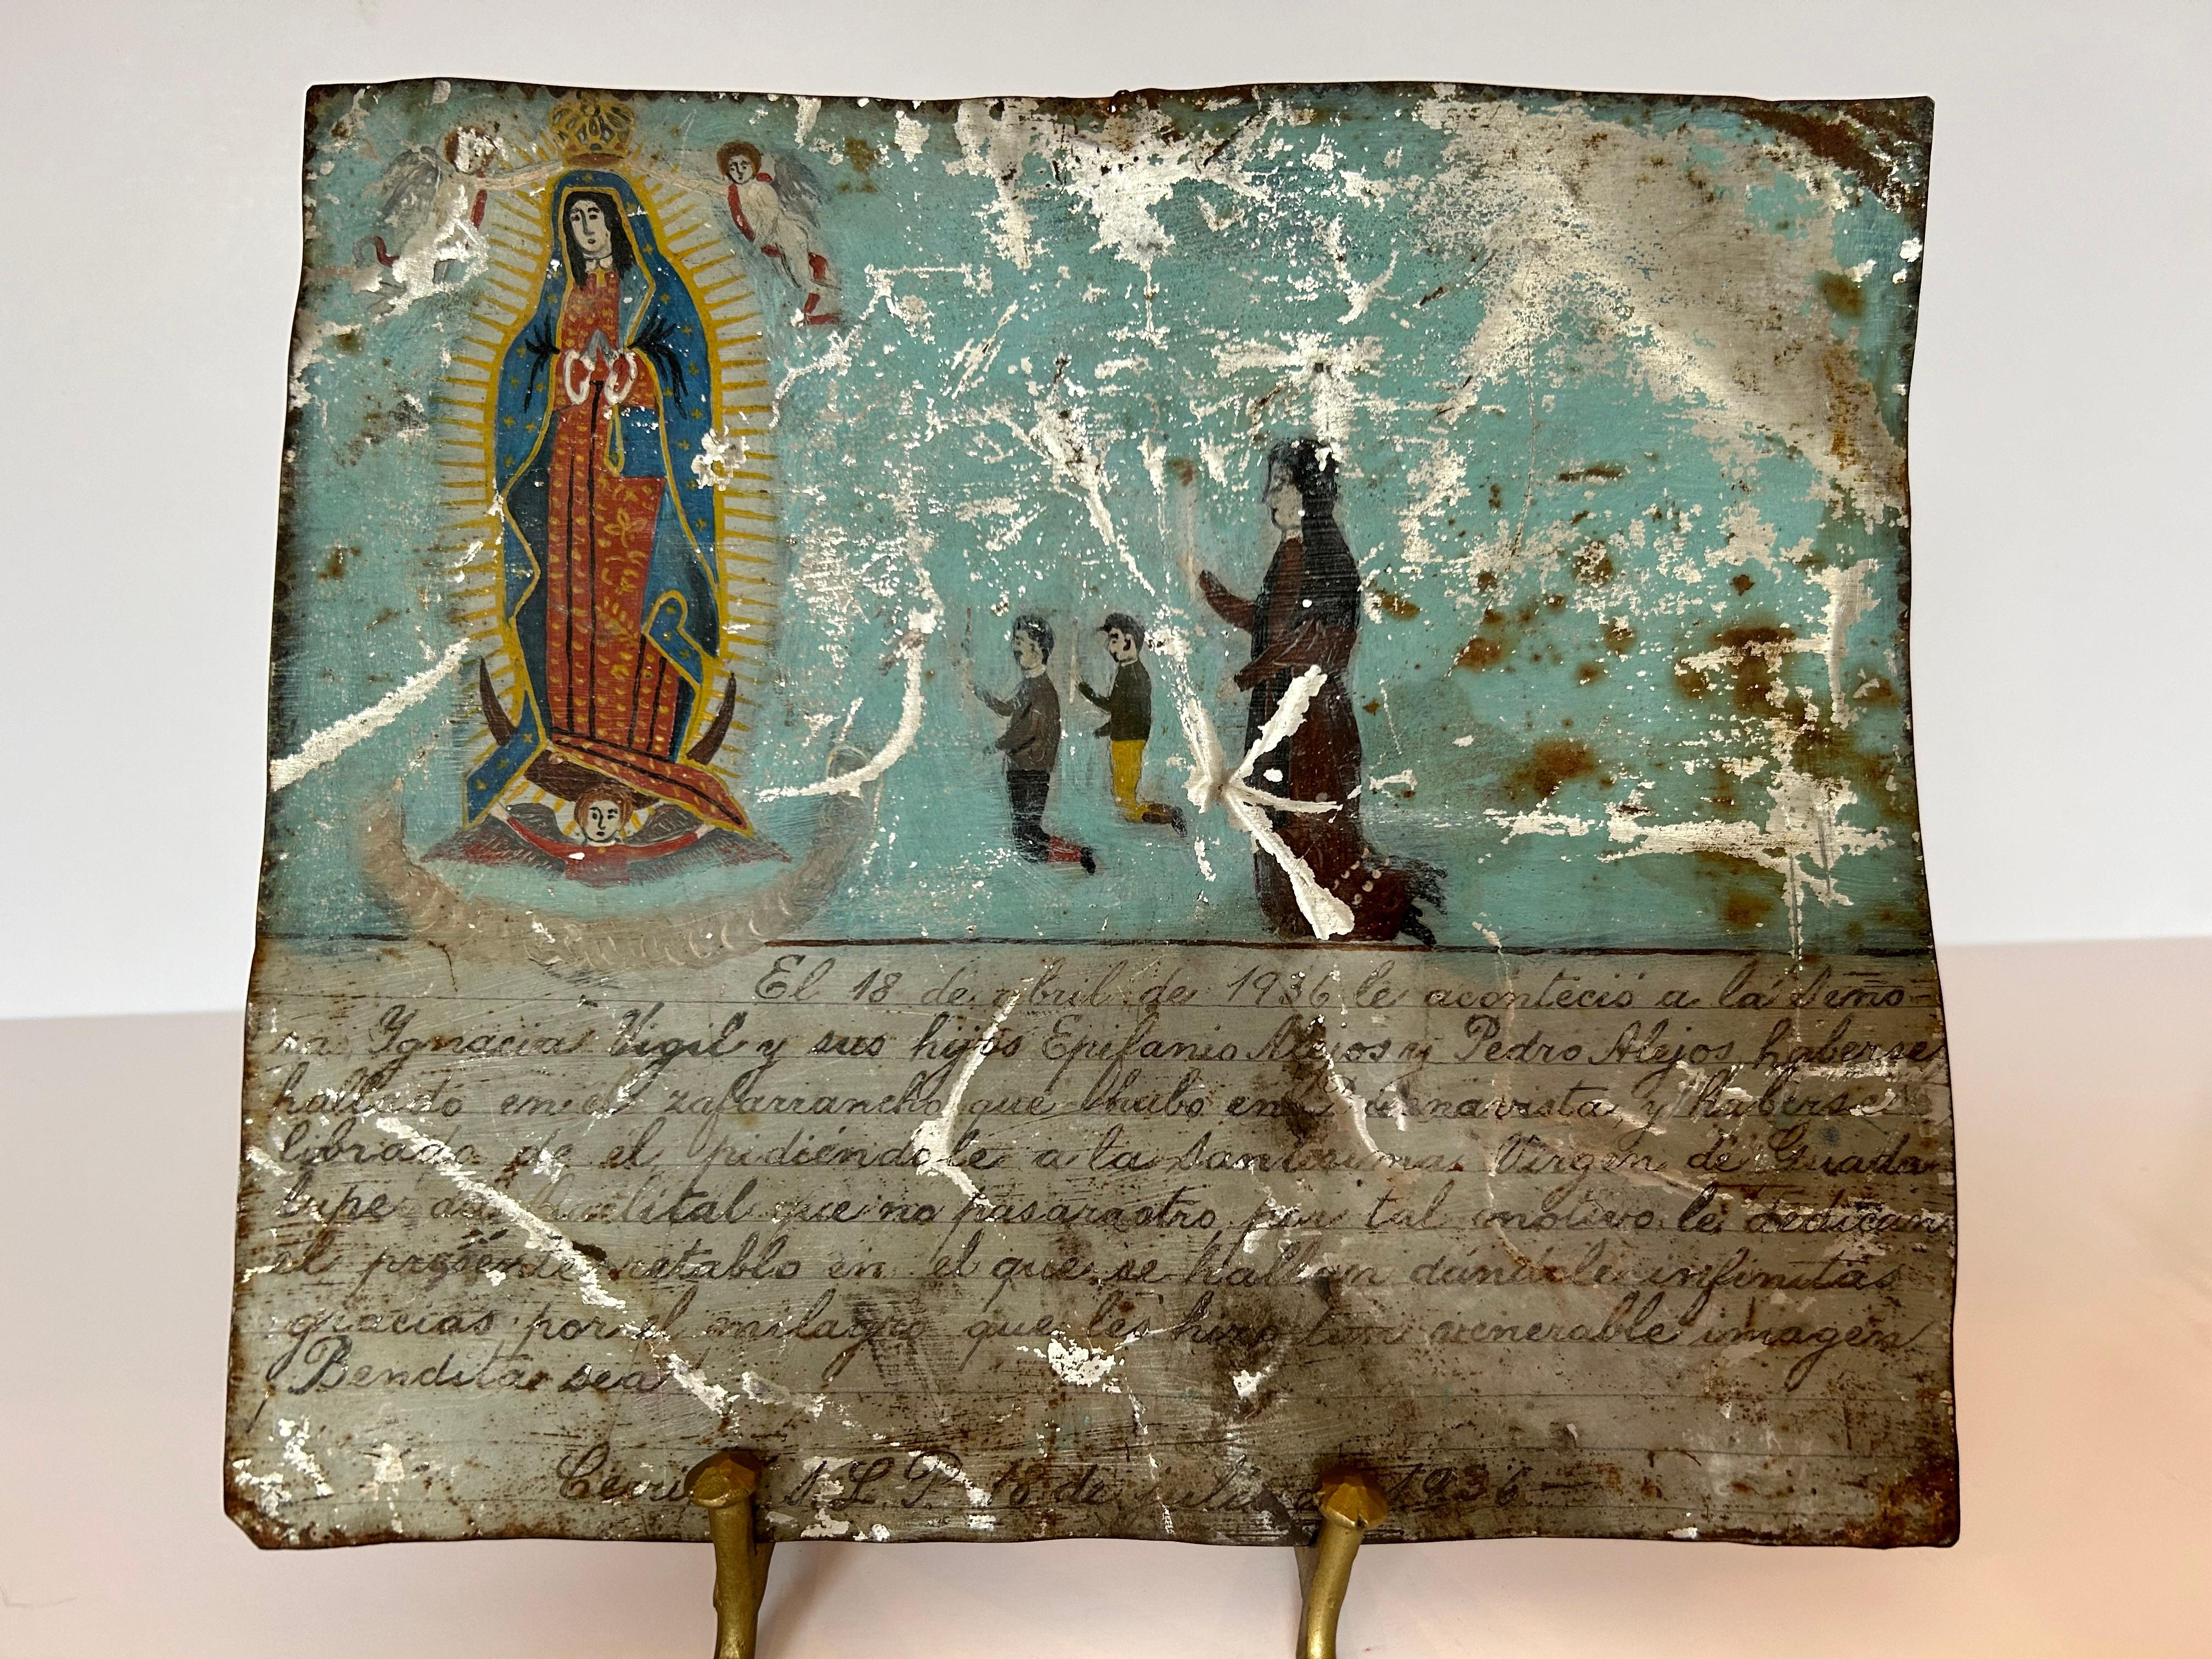 Beau retablo ou ex voto mexicain, peint en 1936, décrivant une mère remerciant la Vierge pour la sécurité de ses deux garçons. La Vierge couronnée de la Guadeloupe flotte entourée de rayons de lumière et de trois anges, tandis que la mère est